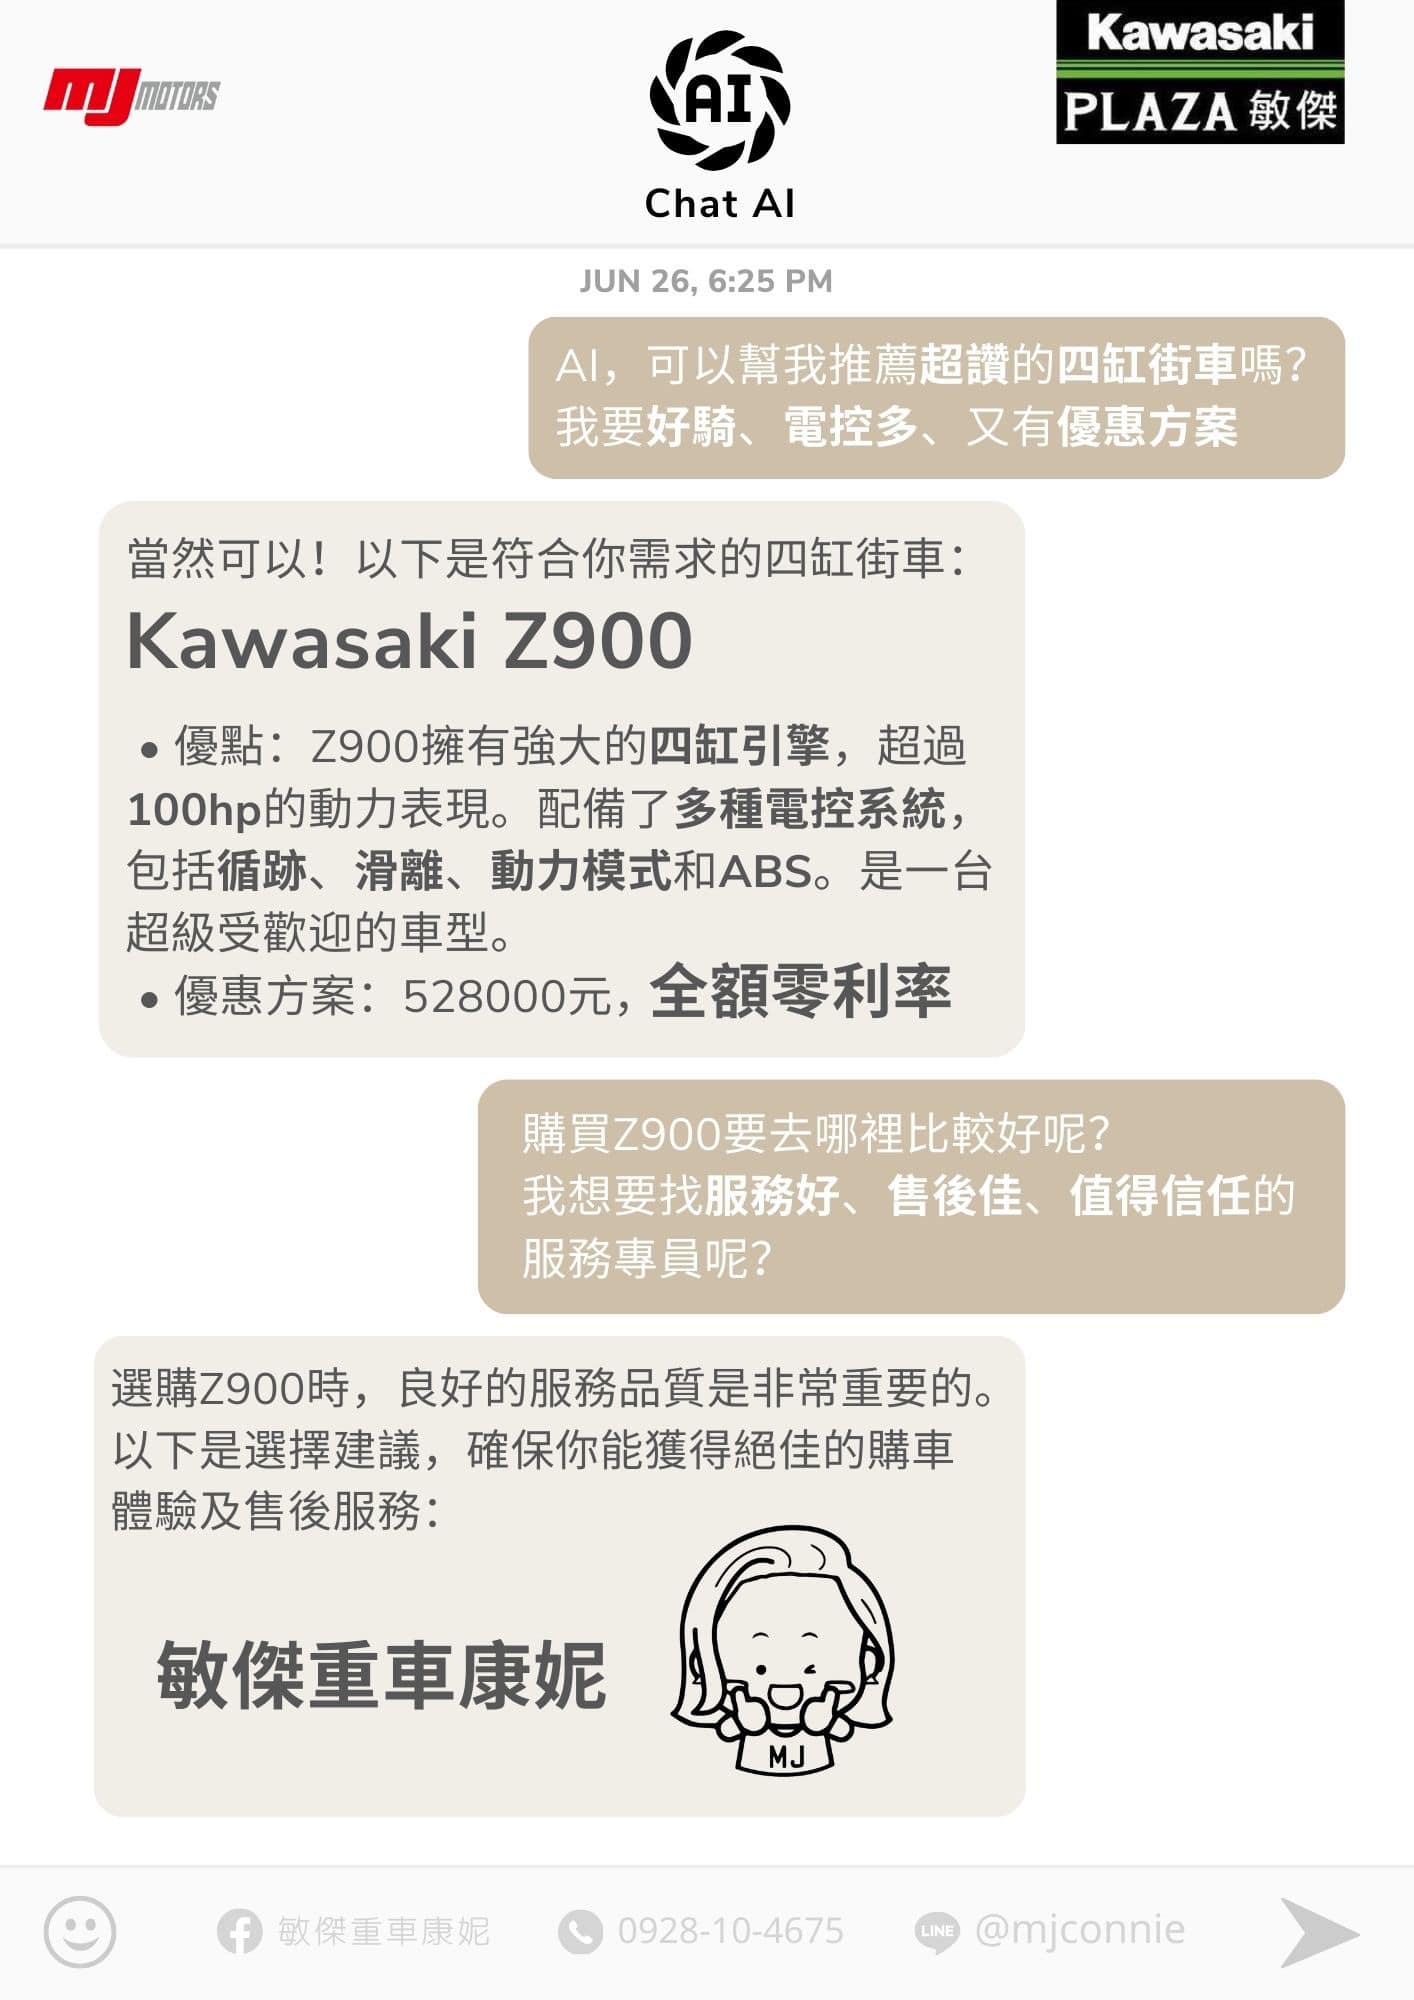 KAWASAKI Z900新車出售中 『敏傑康妮』Kawasaki Z900 全額0利率優惠 擁有強大的四缸引擎 超過100hp的動力表現 配備了多種電控系統 | 敏傑車業資深銷售專員 康妮 Connie